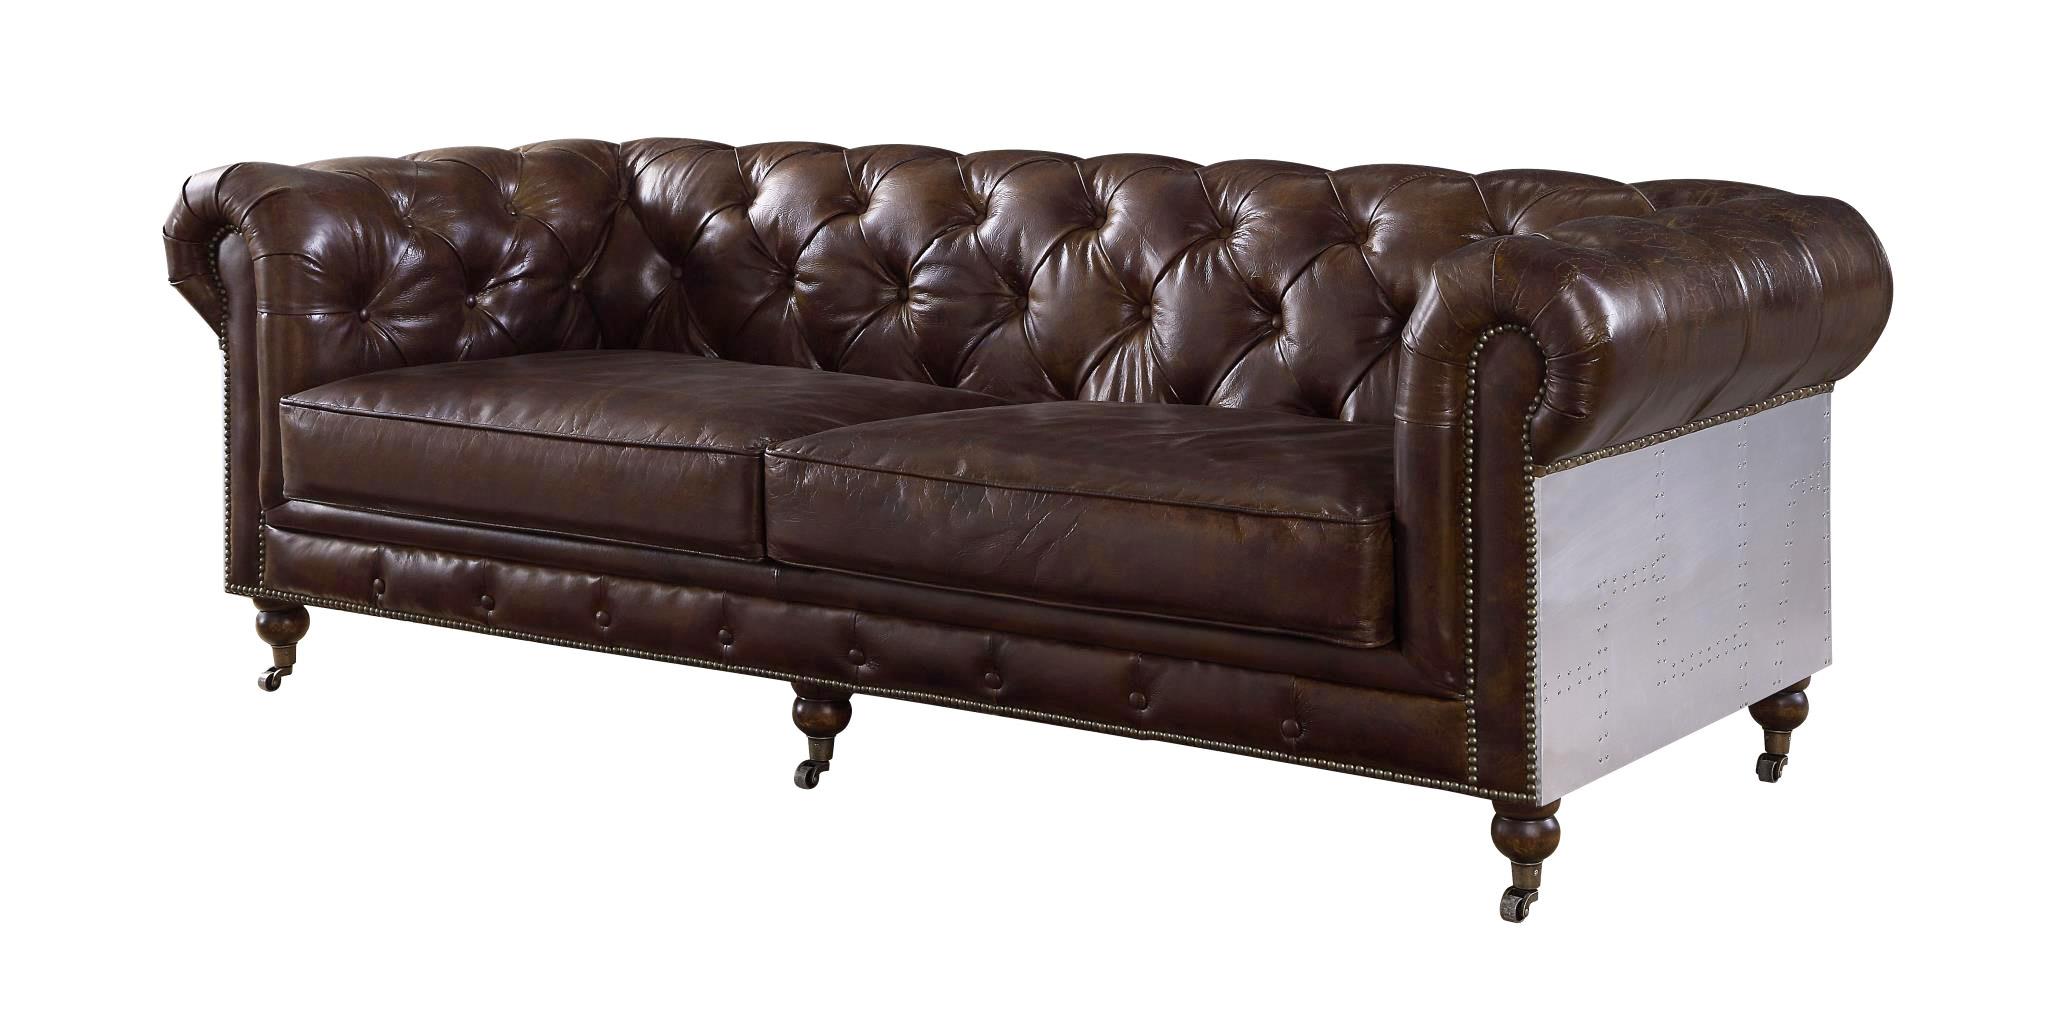 Transitional, Vintage, Urban Sofa Aberdeen 56590 56590- Aberdeen in Metallic, Brown Genuine Leather